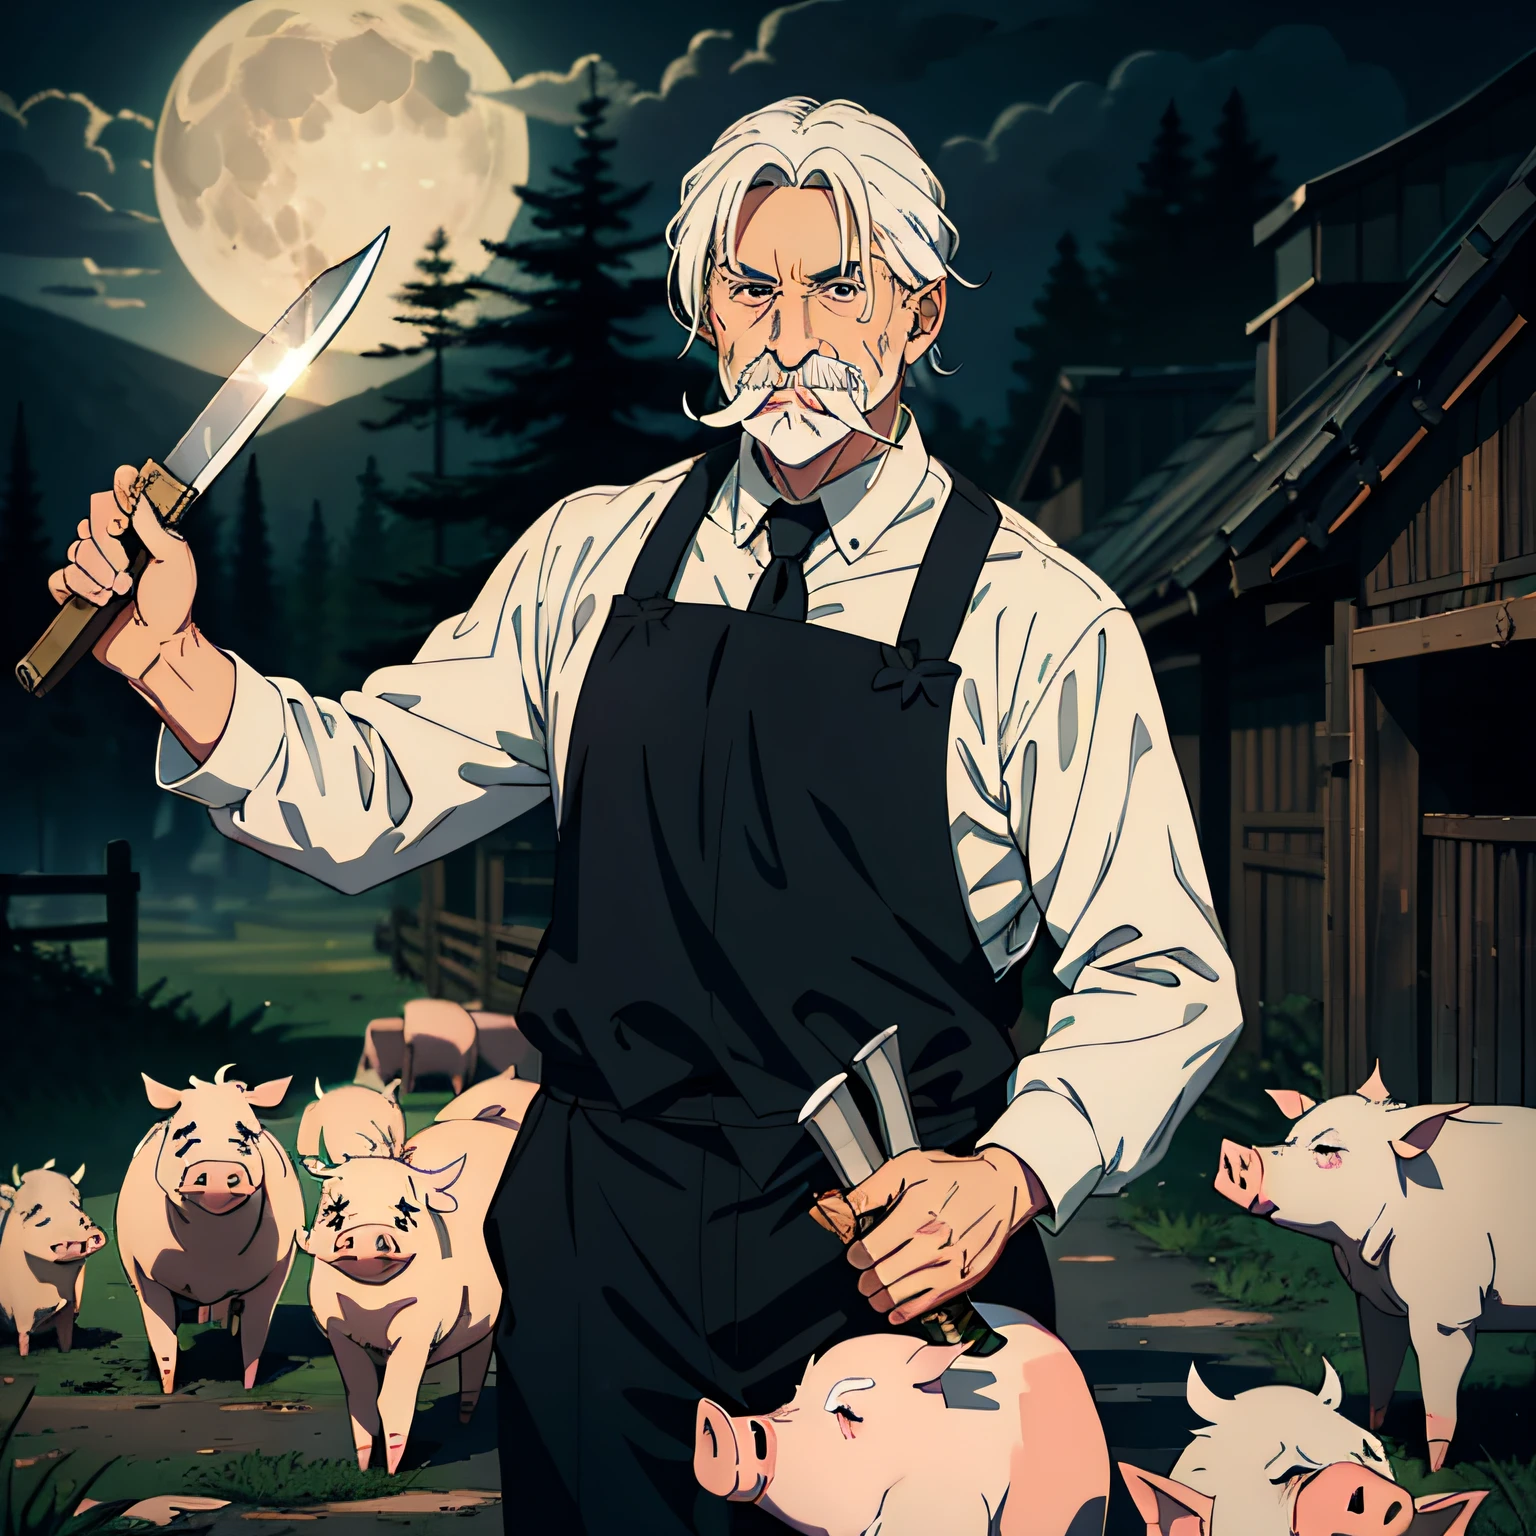 老人，白い口ひげ，白髪，豚を殺すナイフを手に（包丁）背景は養豚場，彼の後ろには10匹以上の豚がいる，不気味なスタイル，テロ的な，夜，ムーン（ラウンド，明るい）